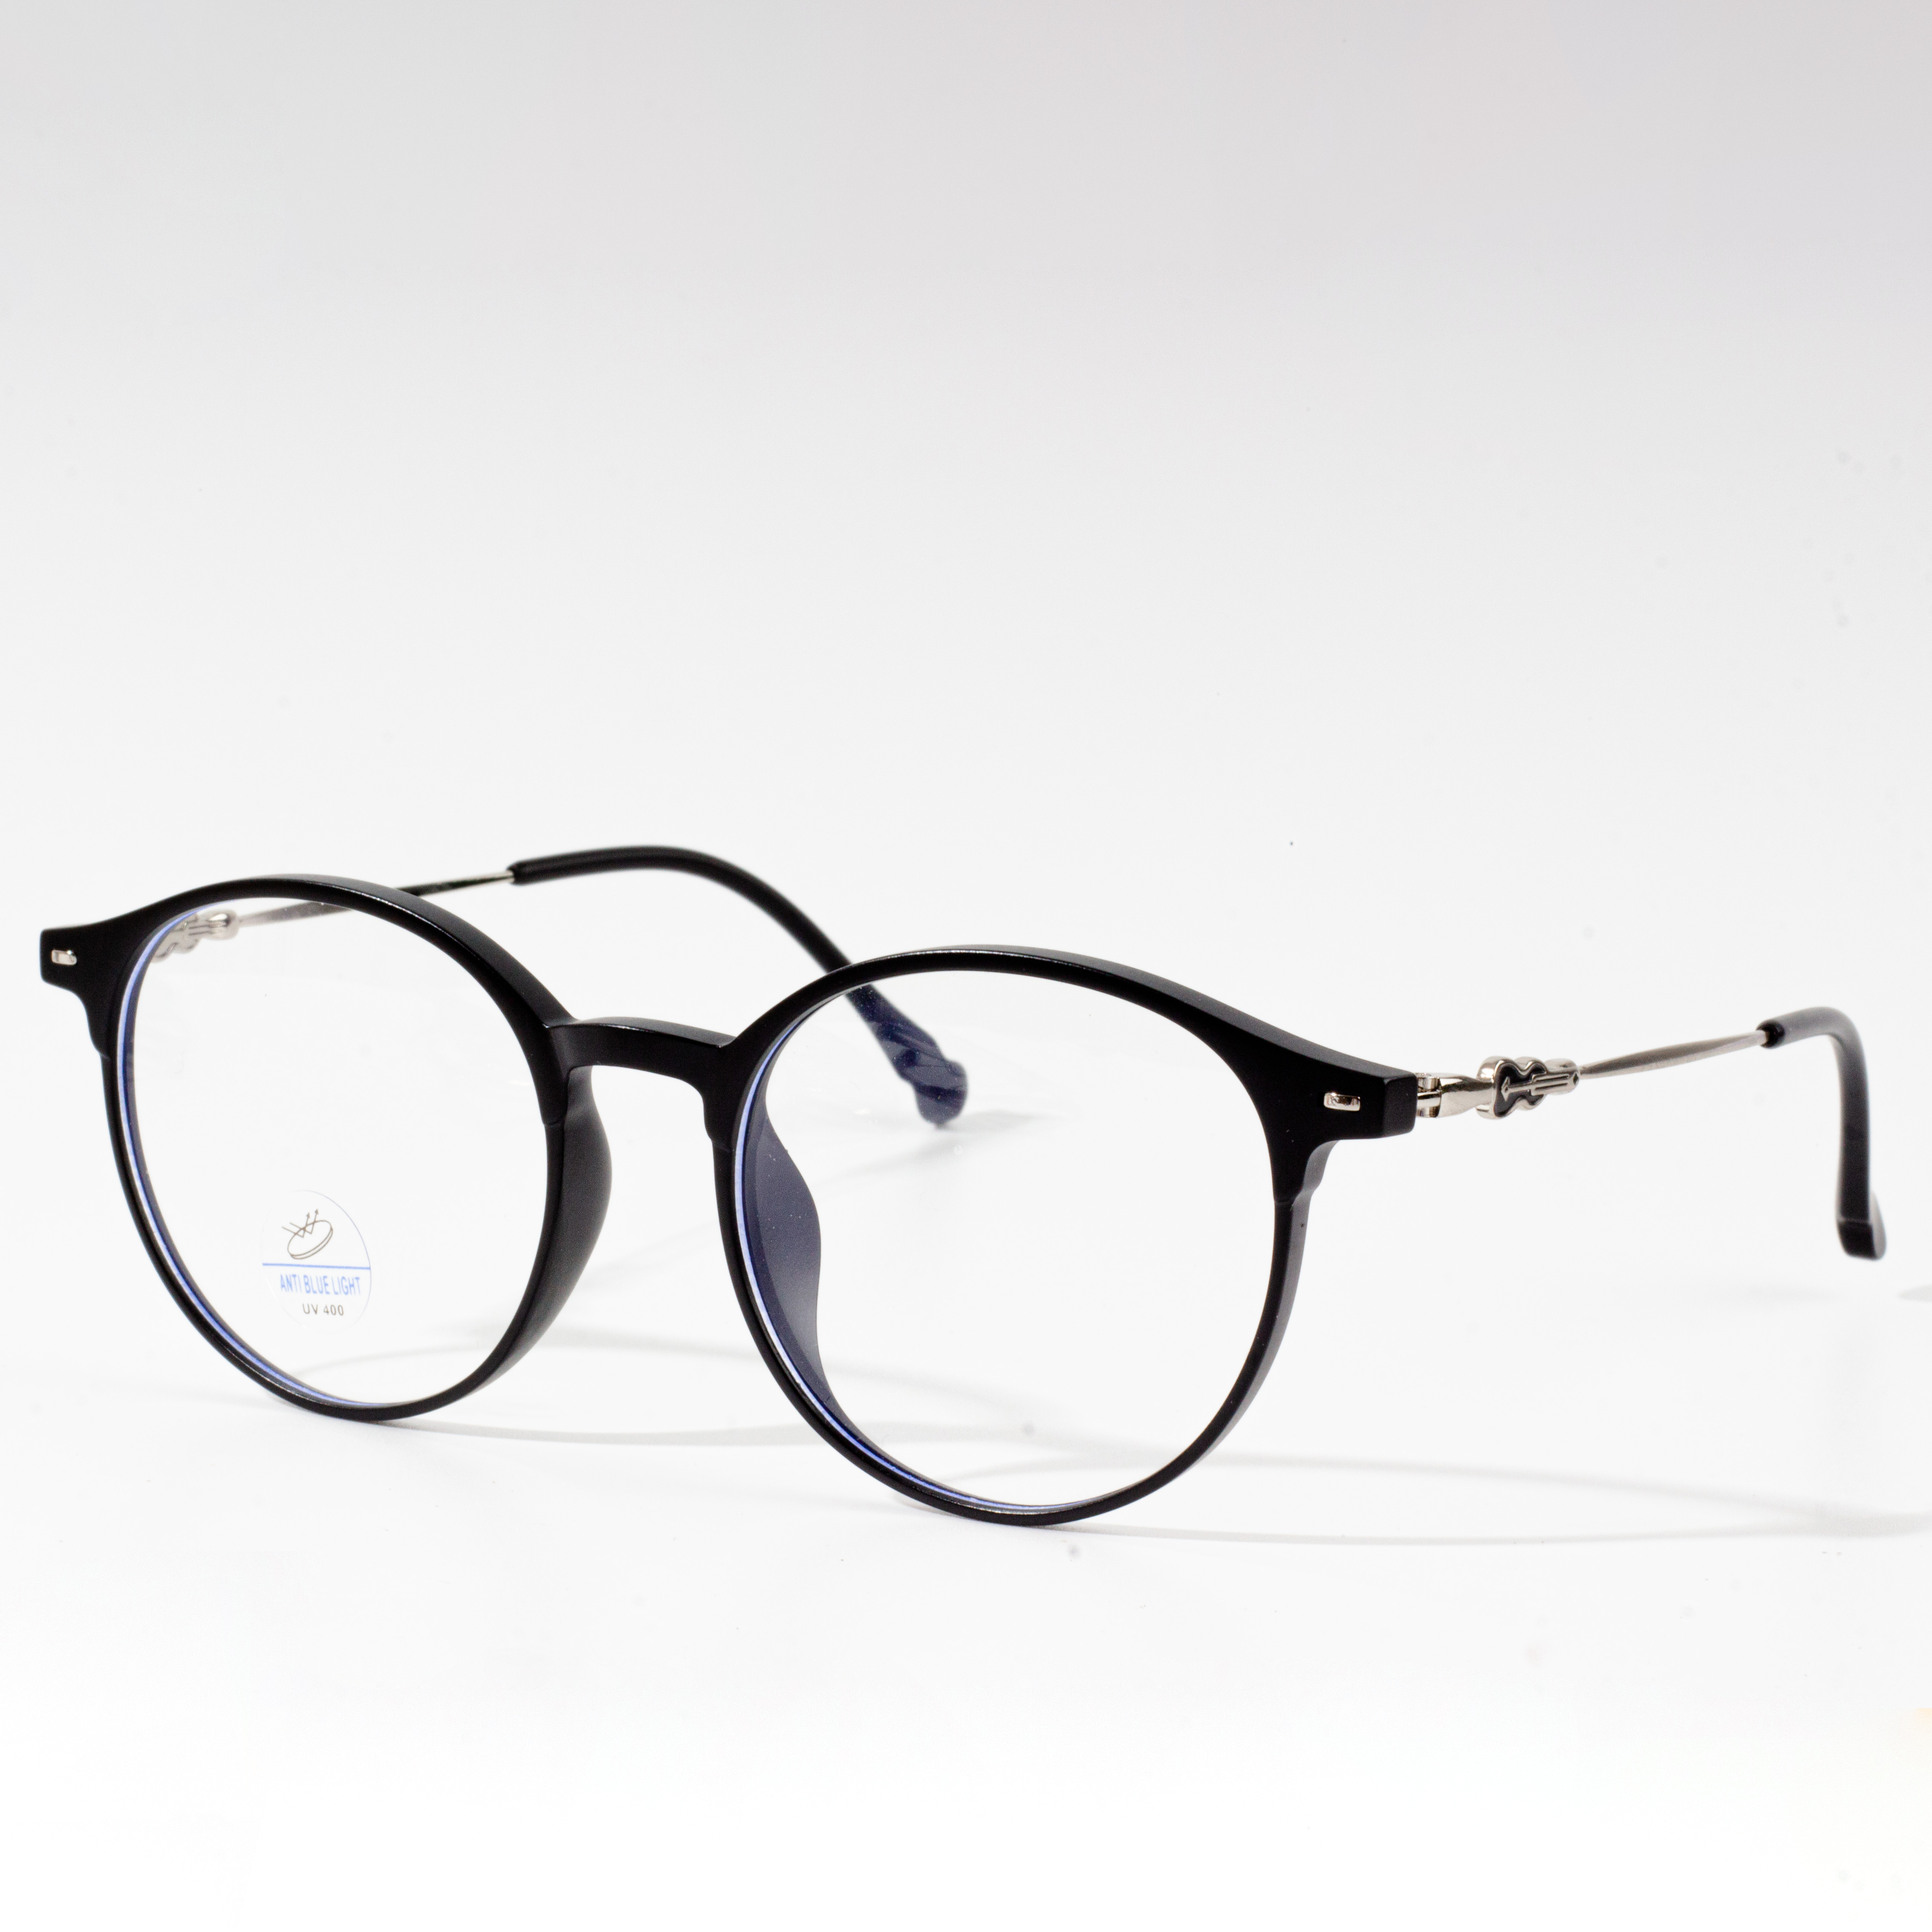 I-IMGdesigner womens eyeglass frames_4913